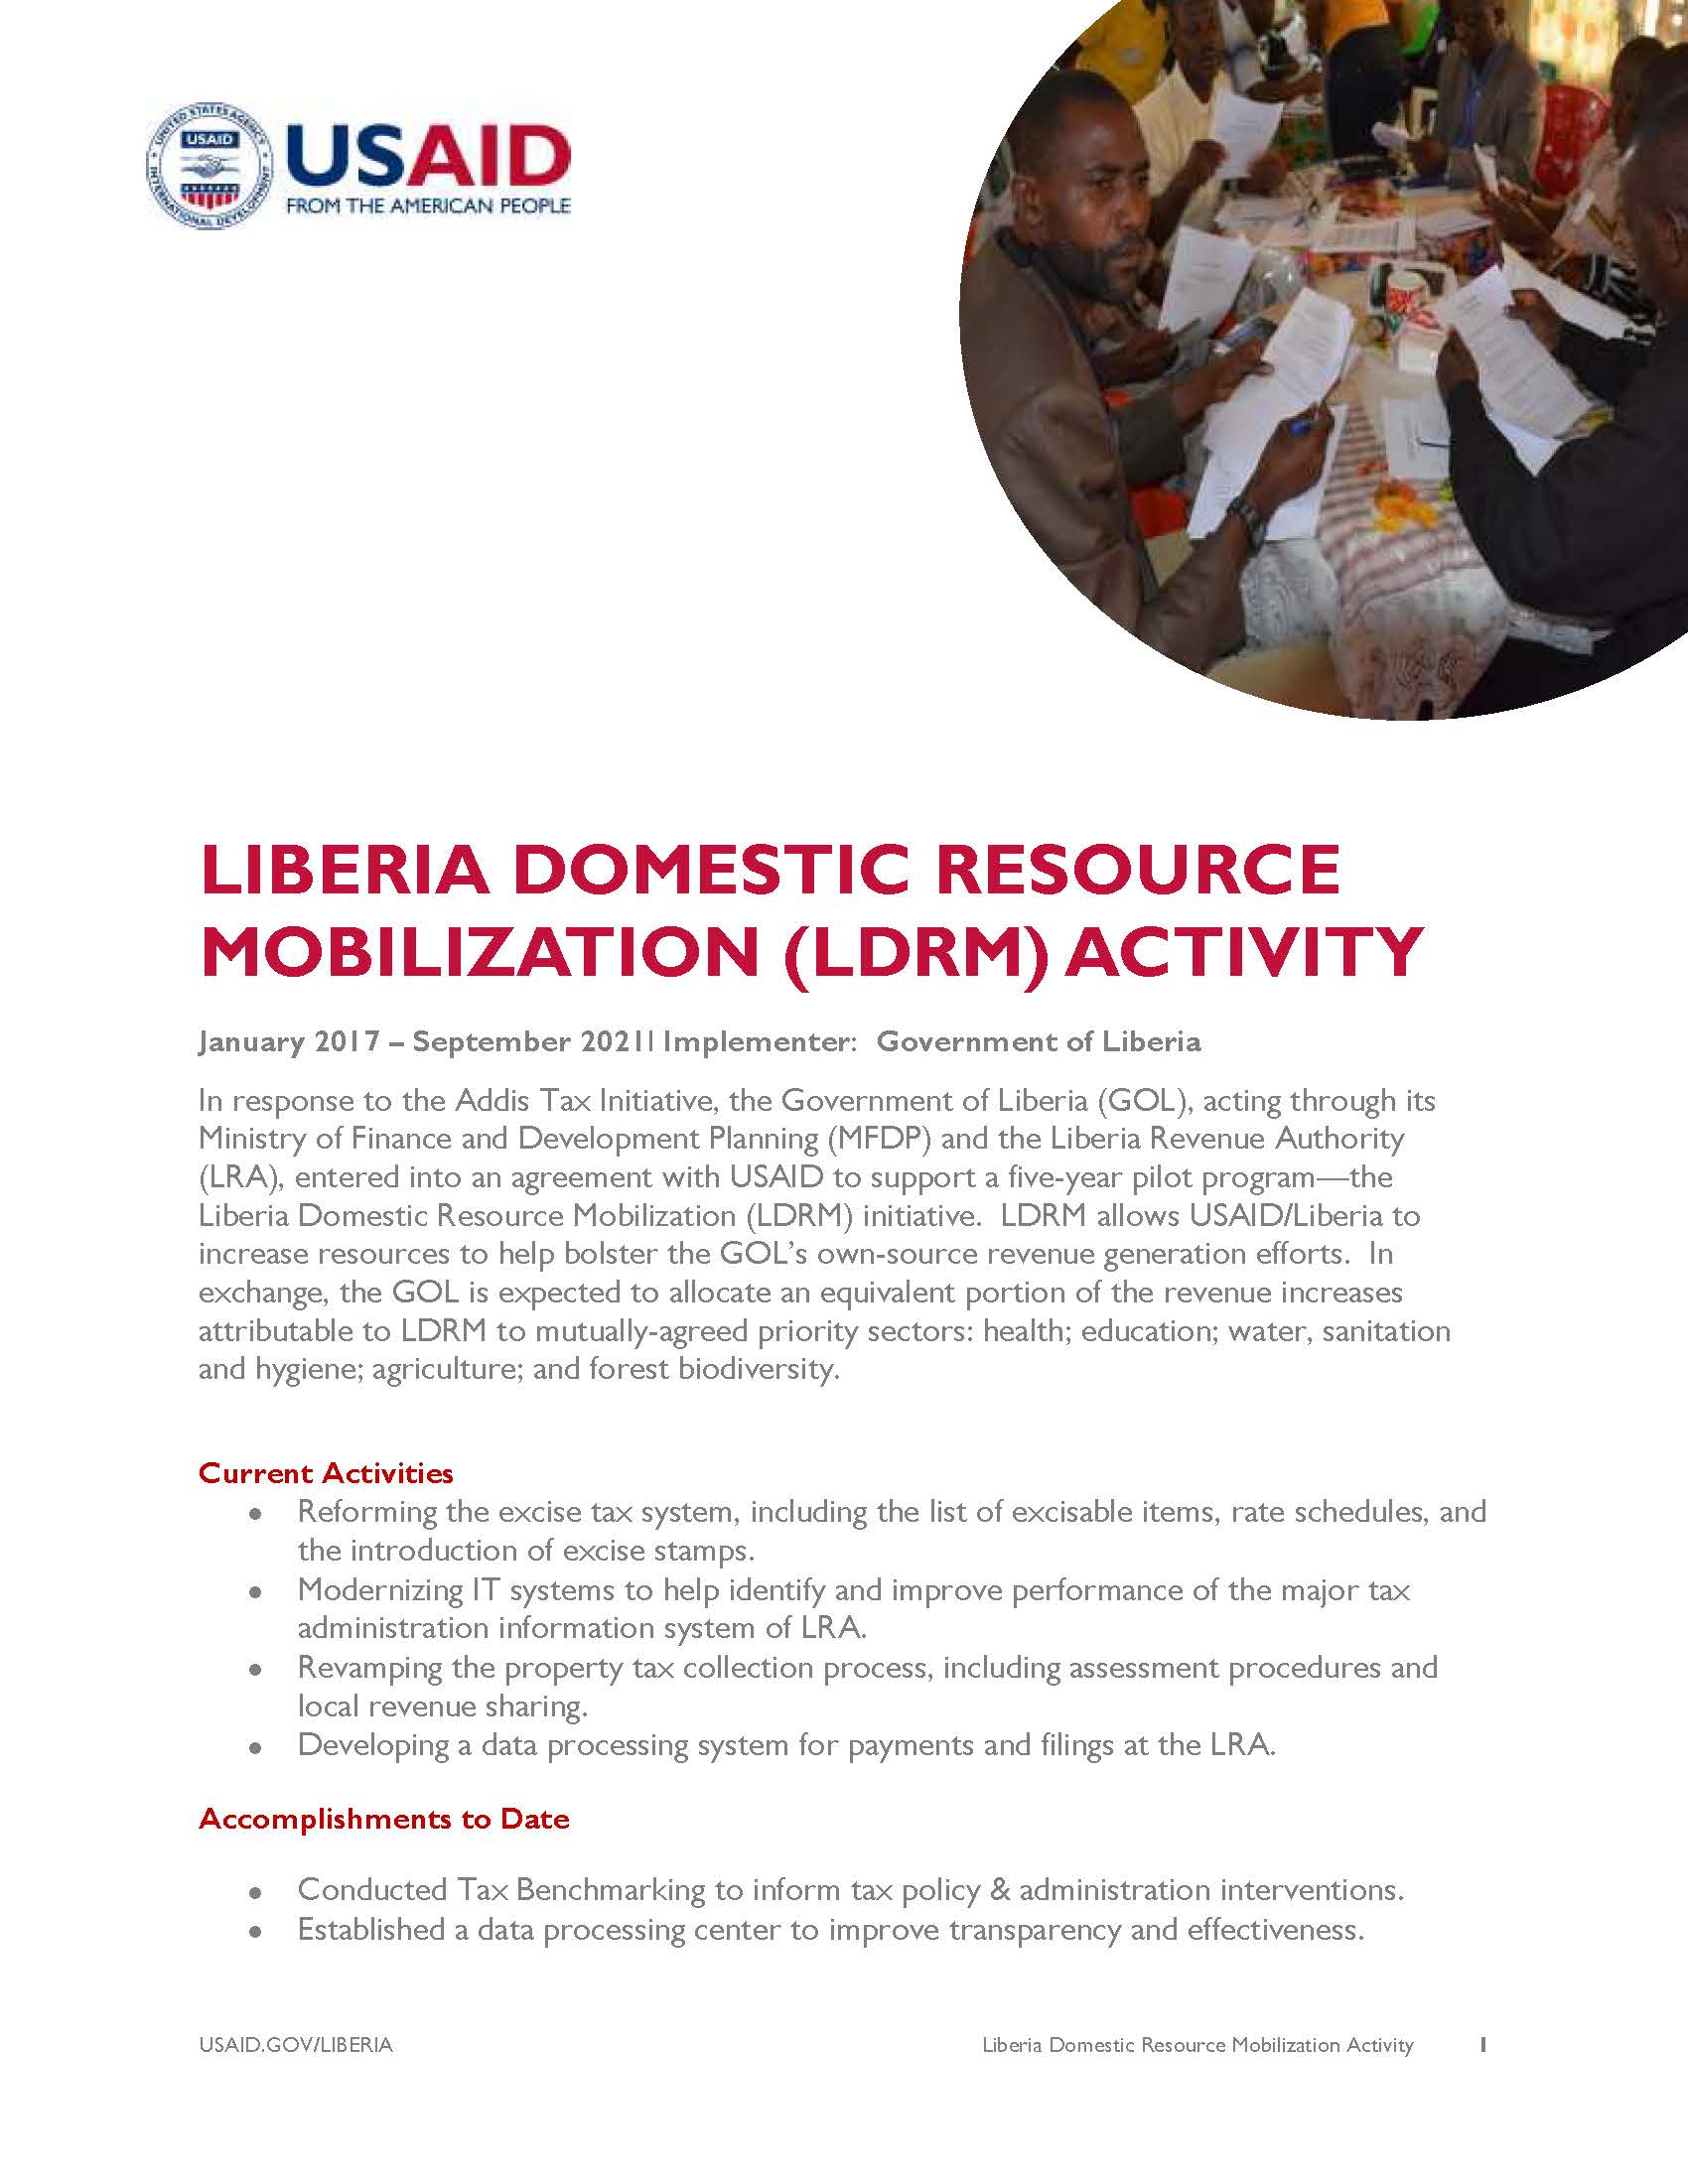 Liberia Domestic Resource Mobilization Activity